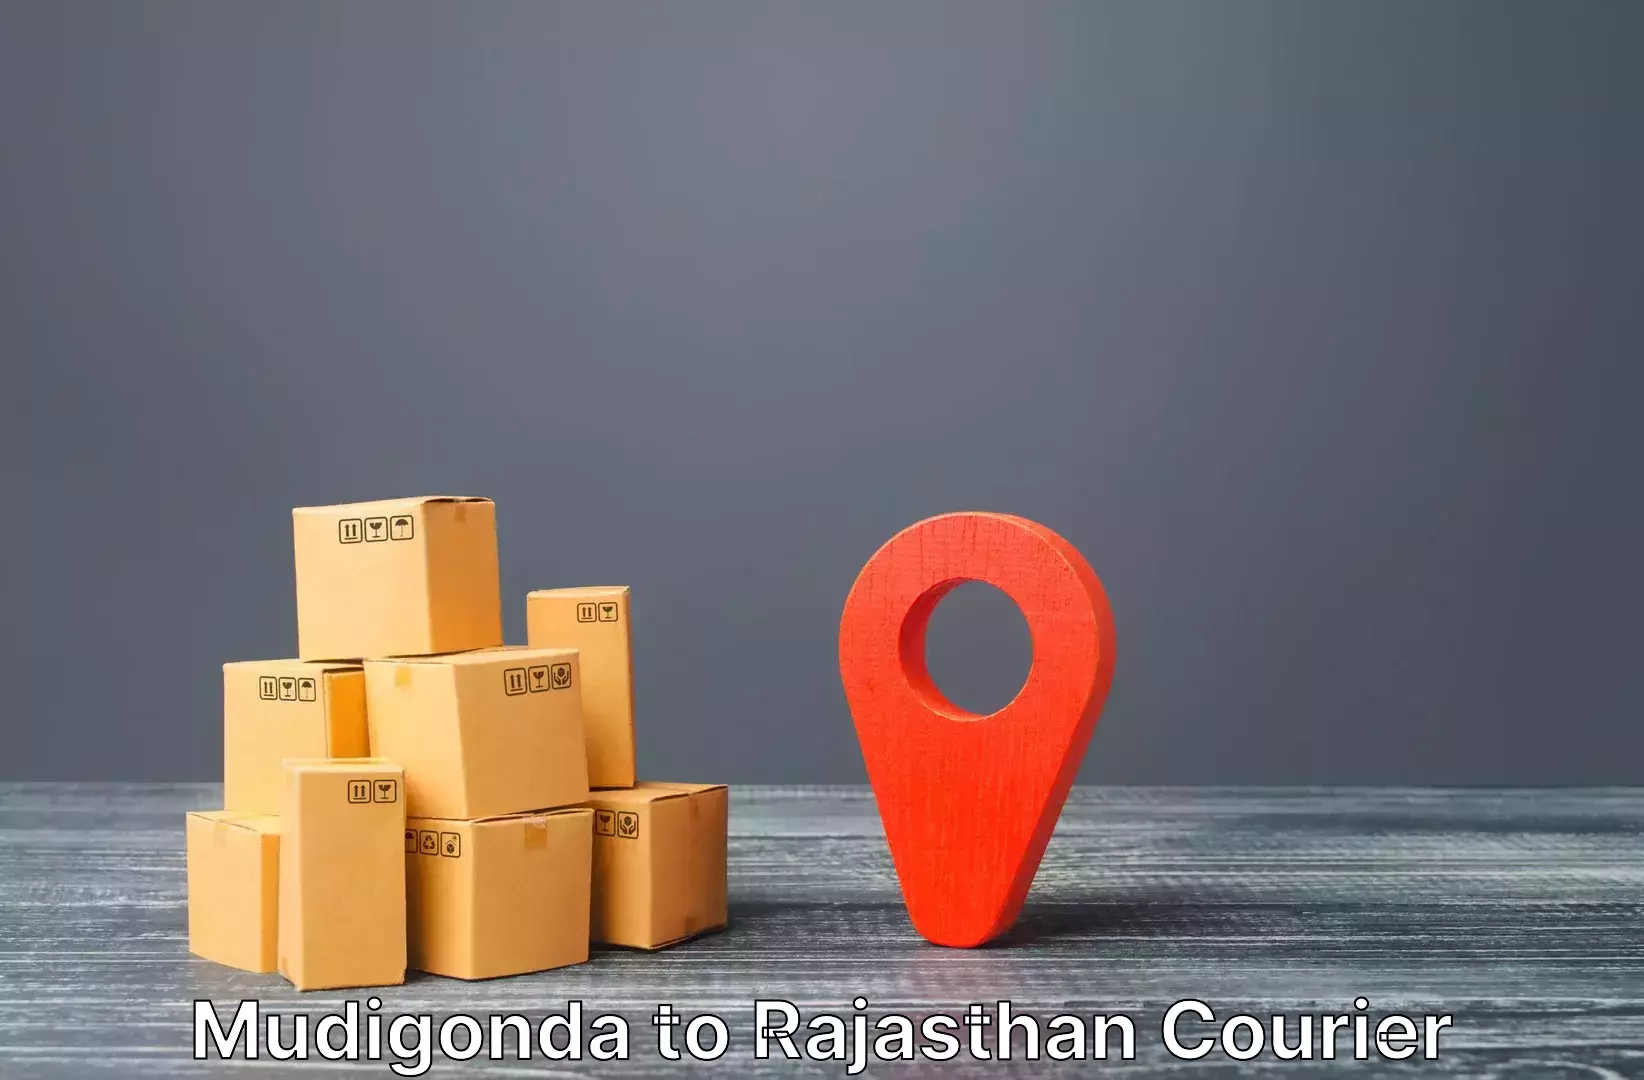 Luggage transit service Mudigonda to Rajasthan